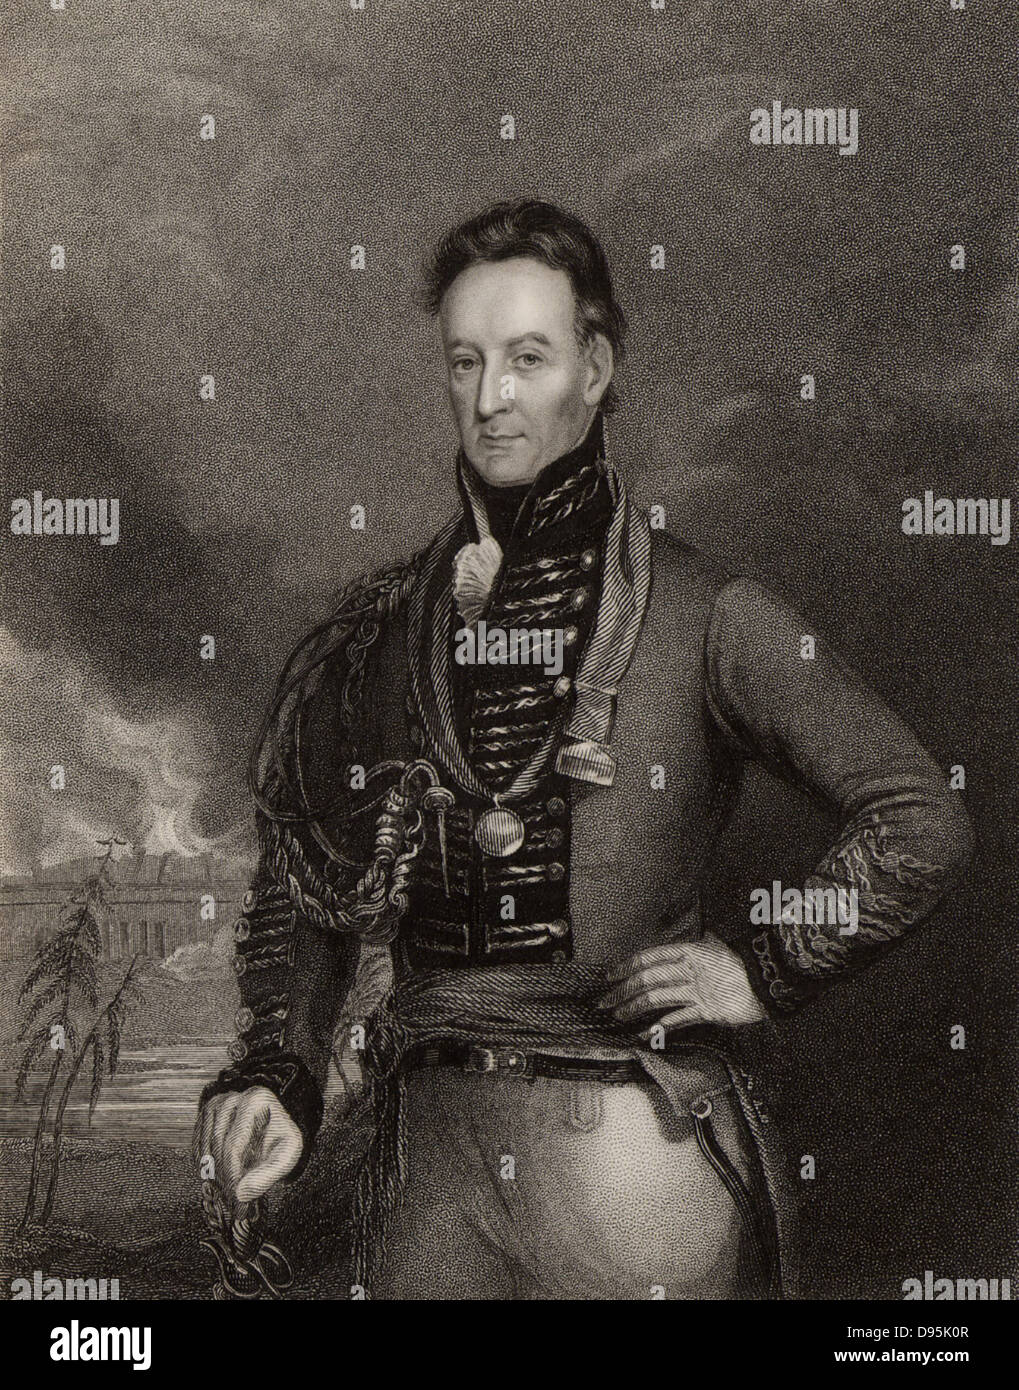 Le major-général Charles Shipley (1755-1815) soldat britannique. Servi principalement dans les Antilles. Gouverneur de la Grenade de 1813 à 1815. Gravure de portrait par Eckstein Banque D'Images